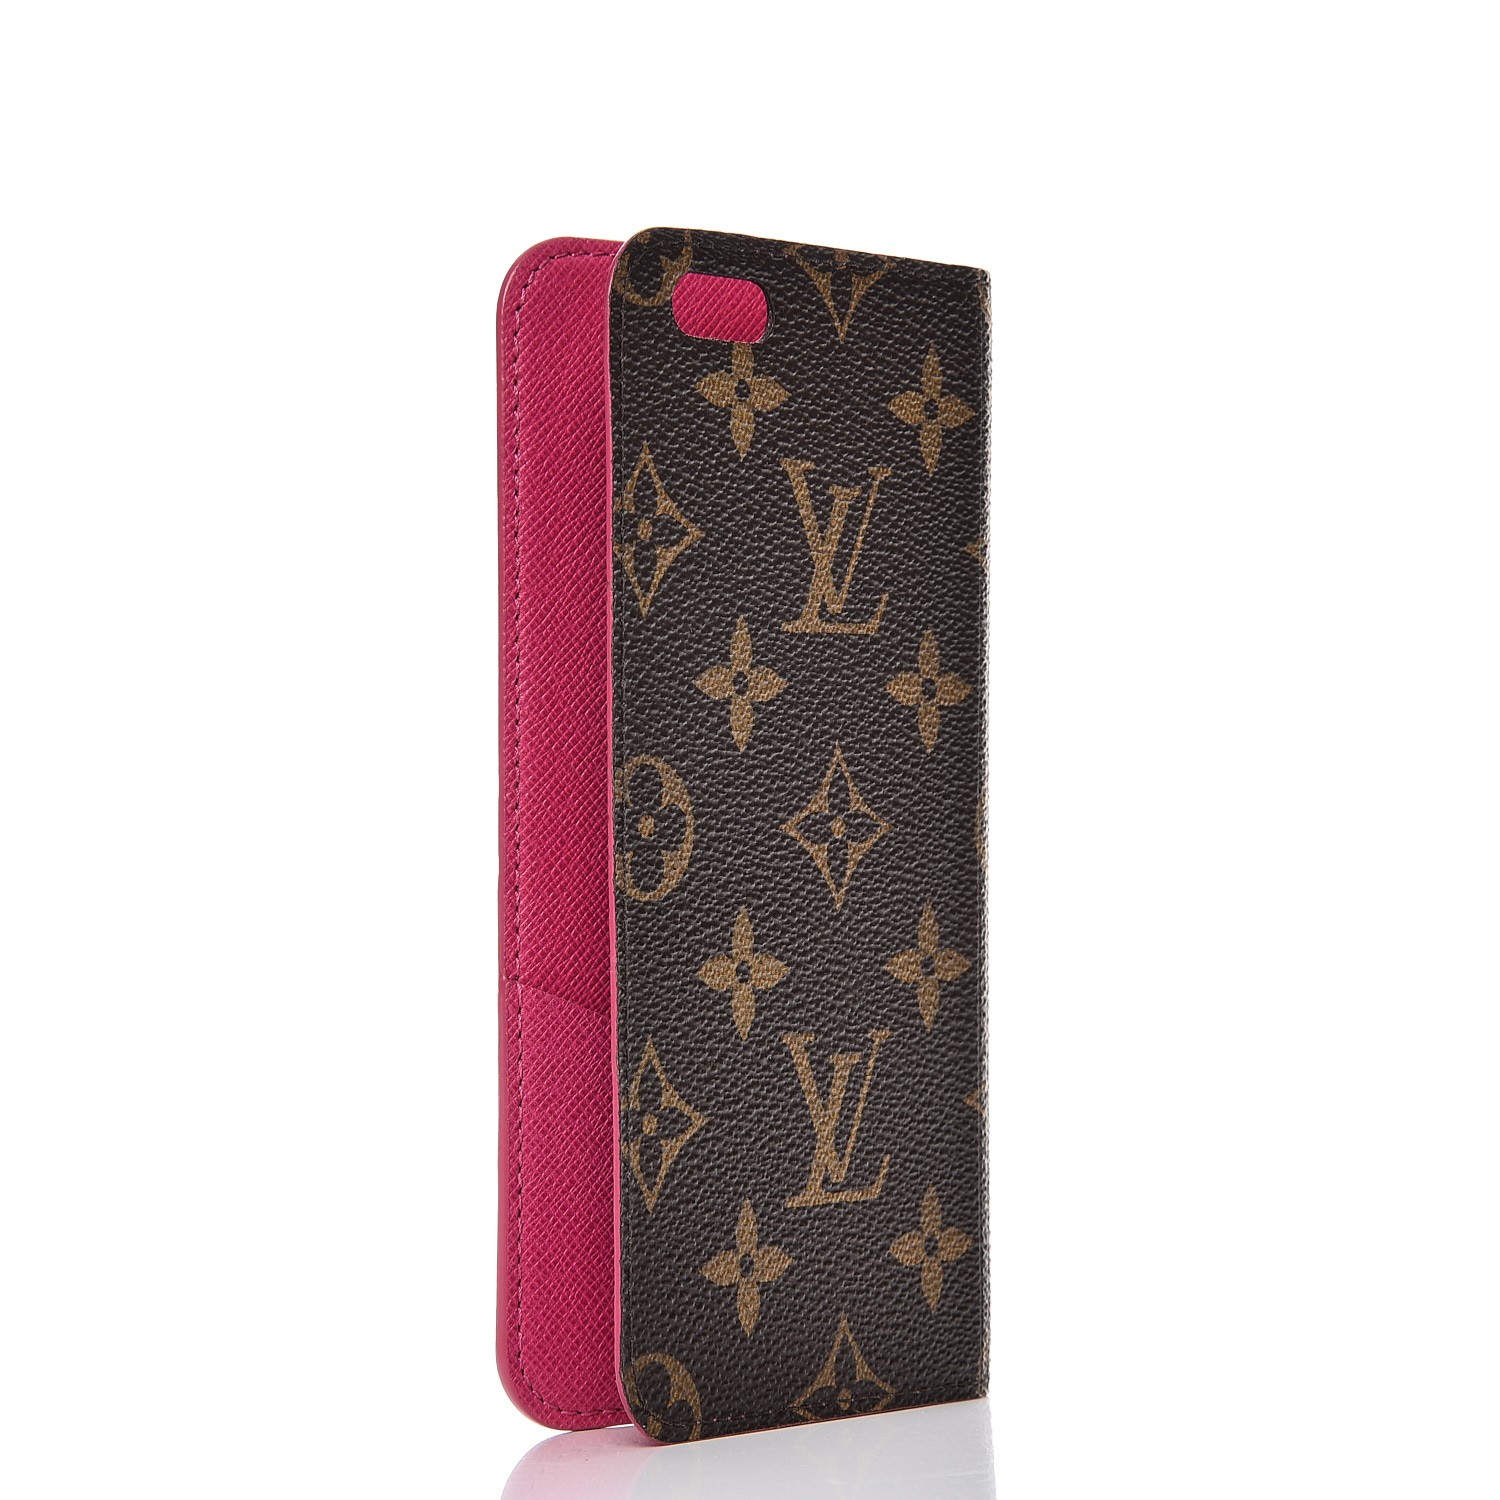 Louis Vuitton iPhone 6 Case 